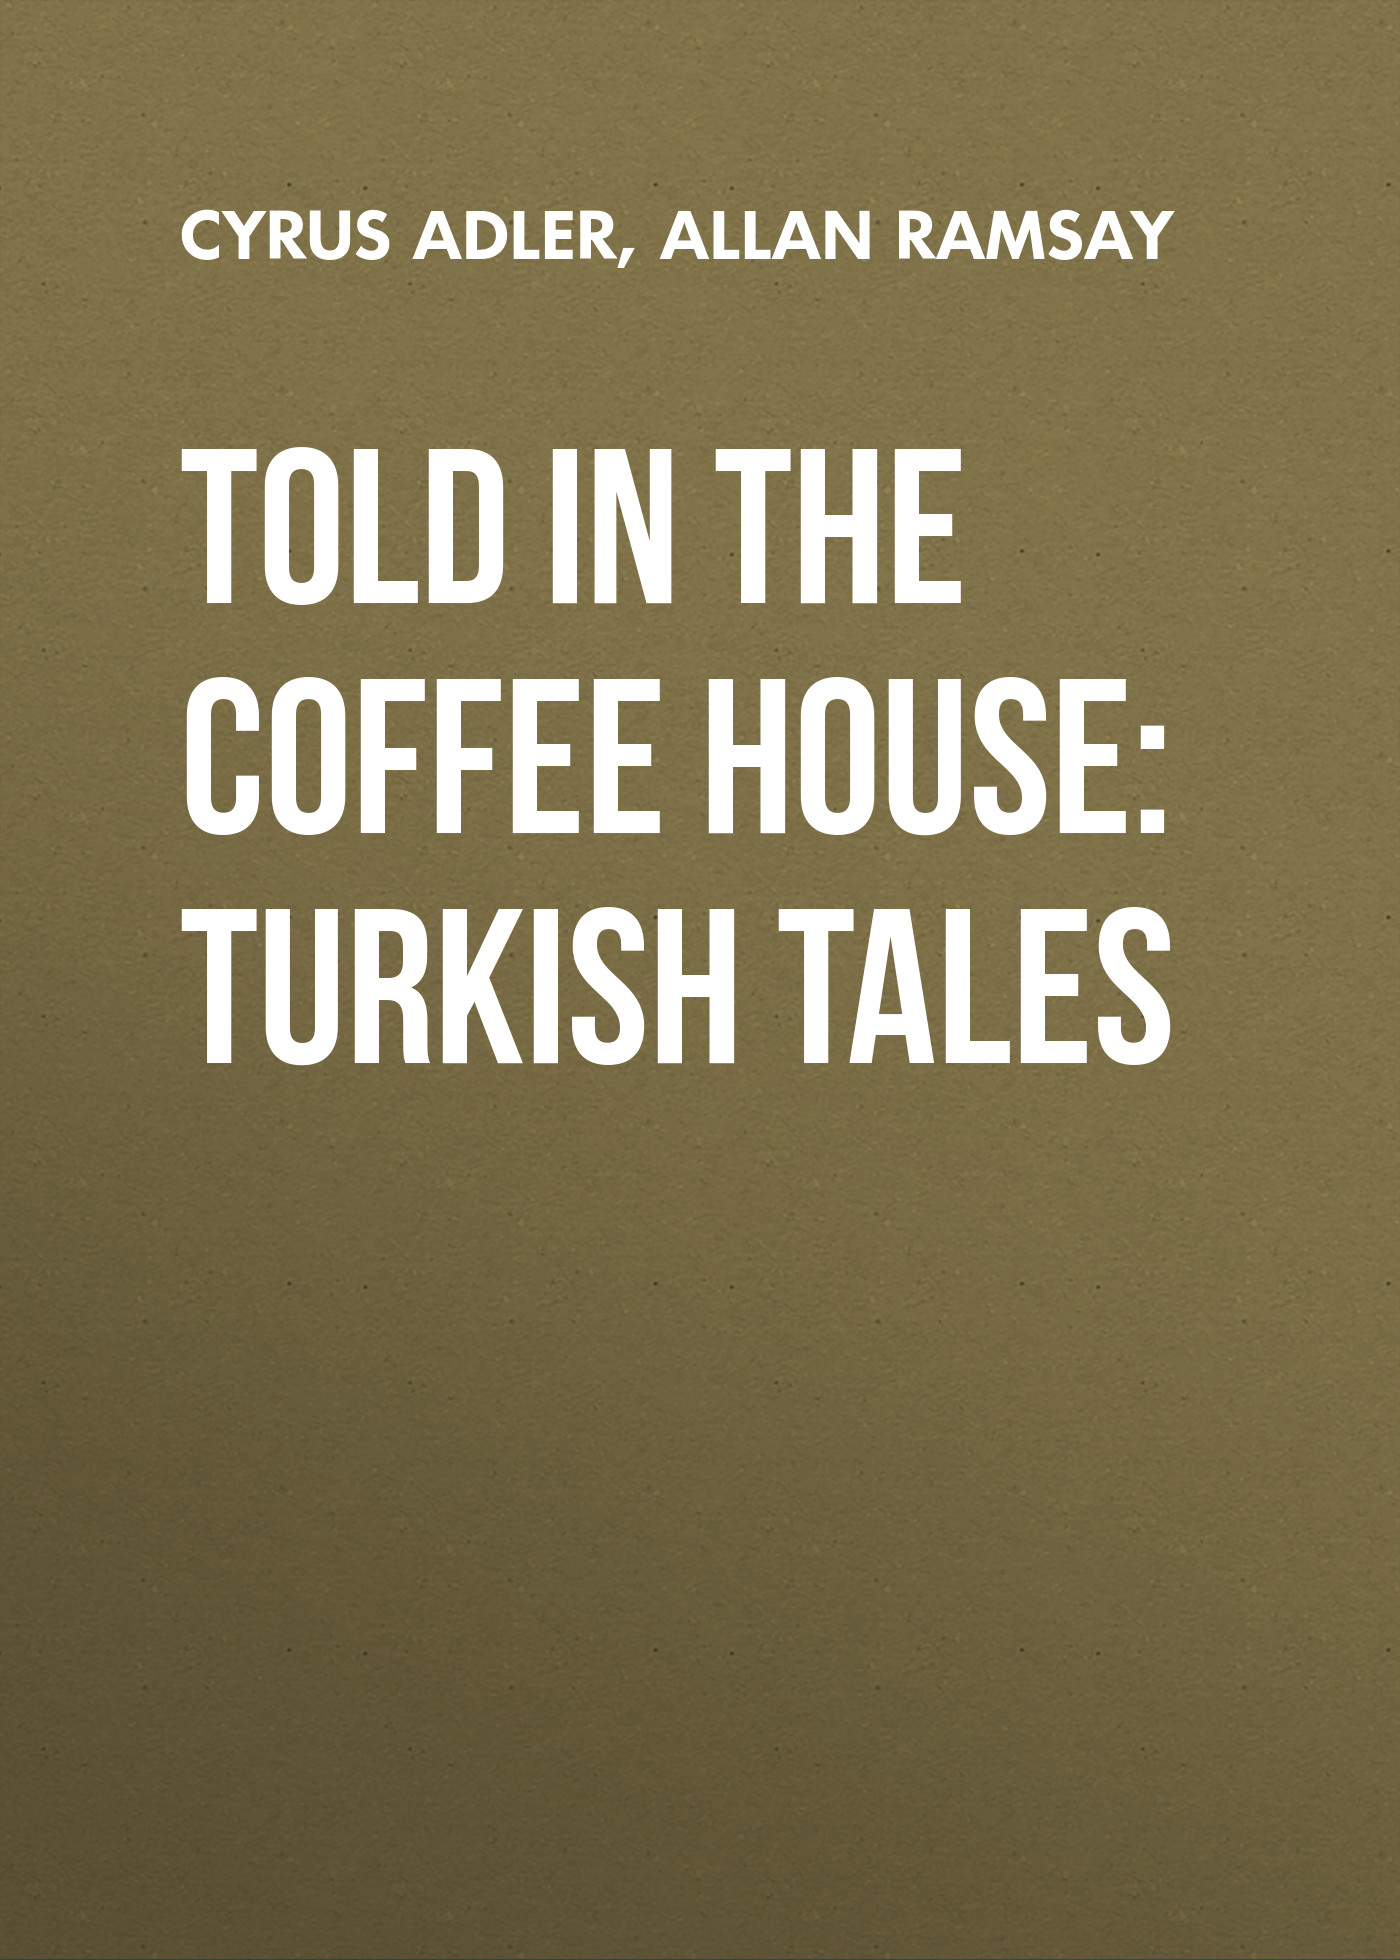 Книга Told in the Coffee House: Turkish Tales из серии , созданная Allan Ramsay, Cyrus Adler, может относится к жанру Зарубежная старинная литература, Зарубежная классика, Иностранные языки. Стоимость электронной книги Told in the Coffee House: Turkish Tales с идентификатором 24166324 составляет 0 руб.